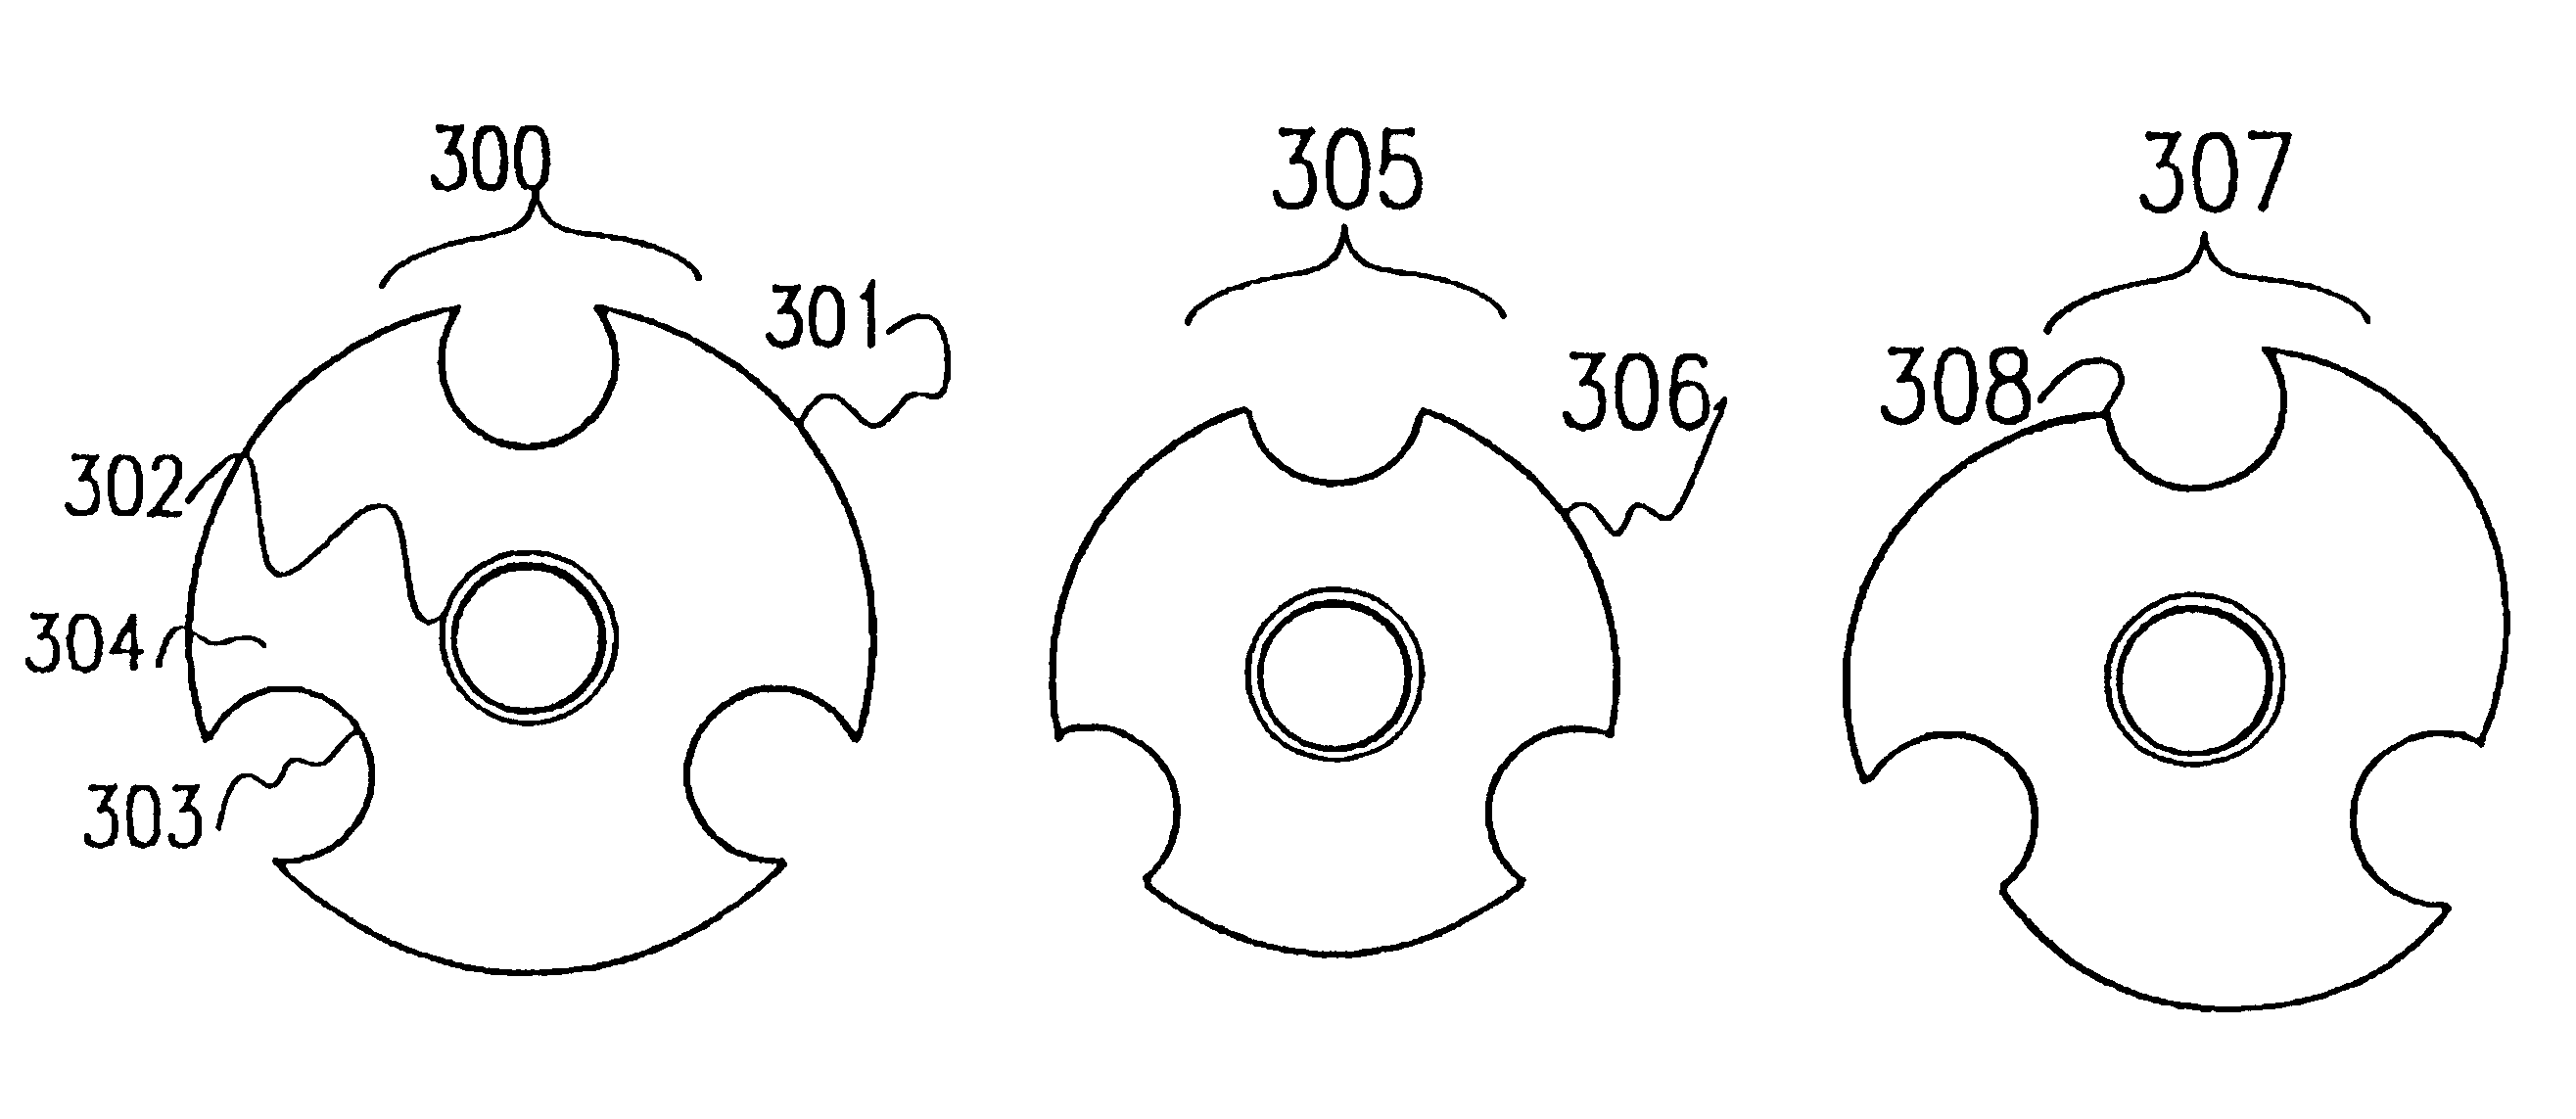 Backing plates for abrasive disks